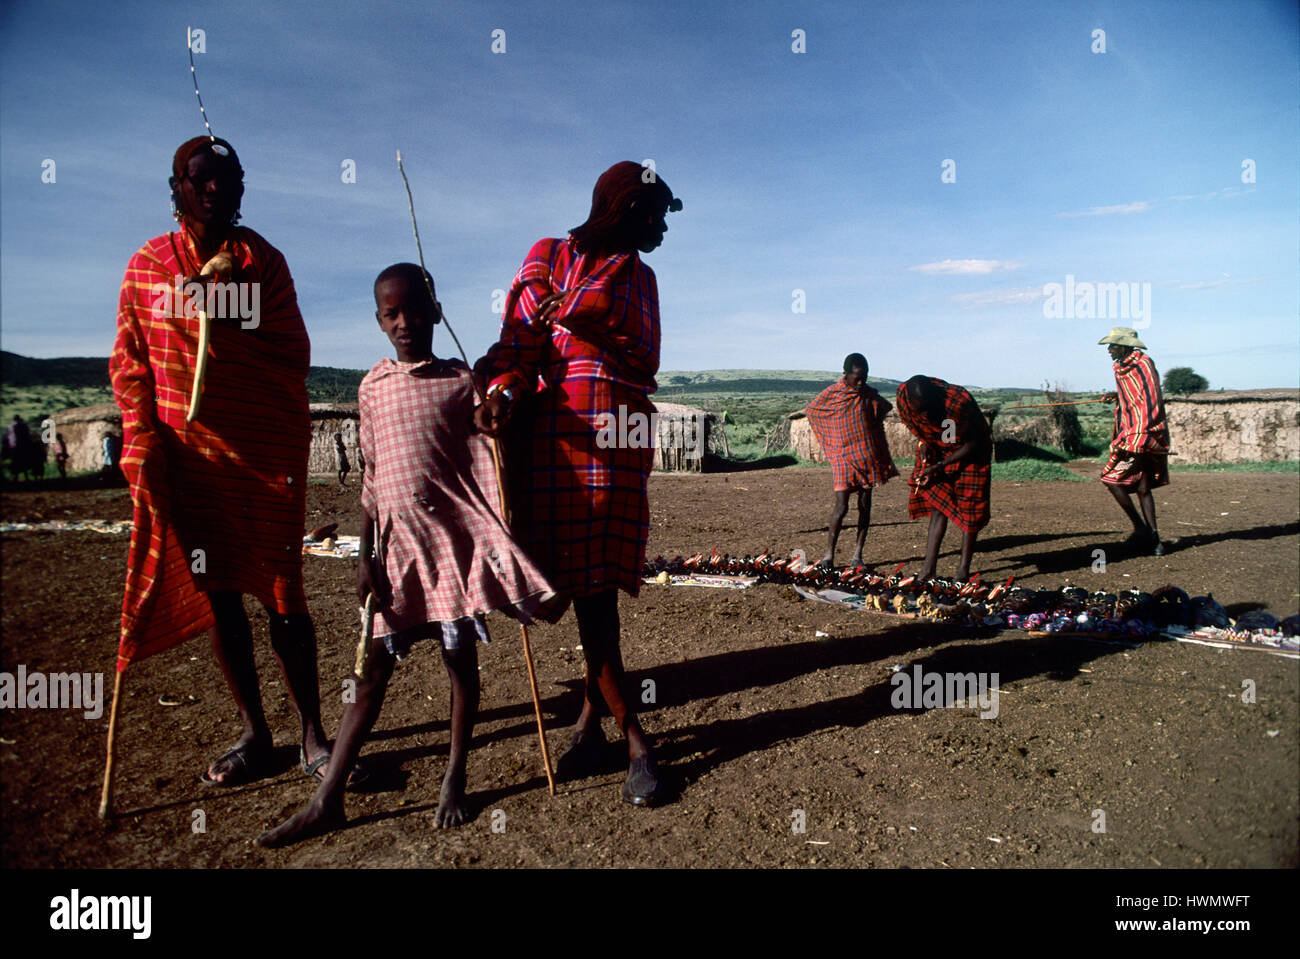 Guerriers Masai dans leur manyatta près de Sekenani gate de la Masai Mara, Kenya. Masais sont peut-être le plus célèbre de tous les tribus africaines, li Banque D'Images